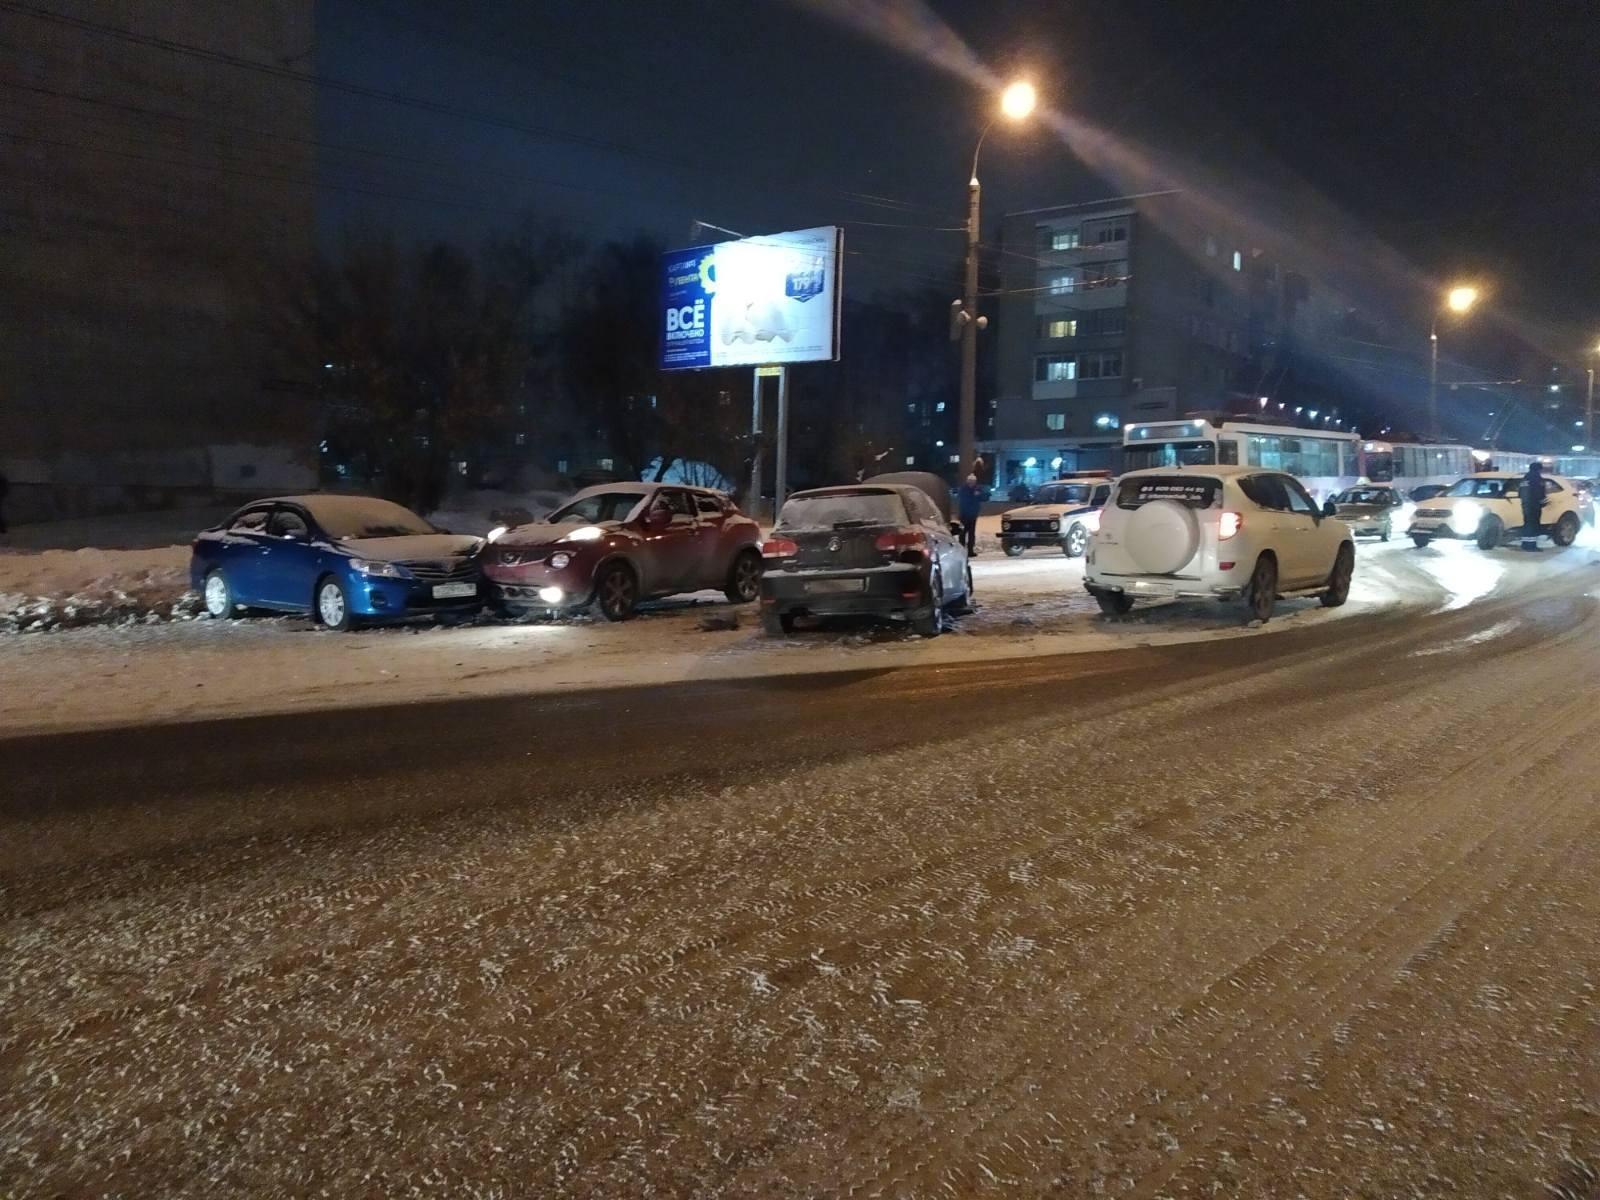 

Два человека попали в больницу в результате массового ДТП в Ижевске

